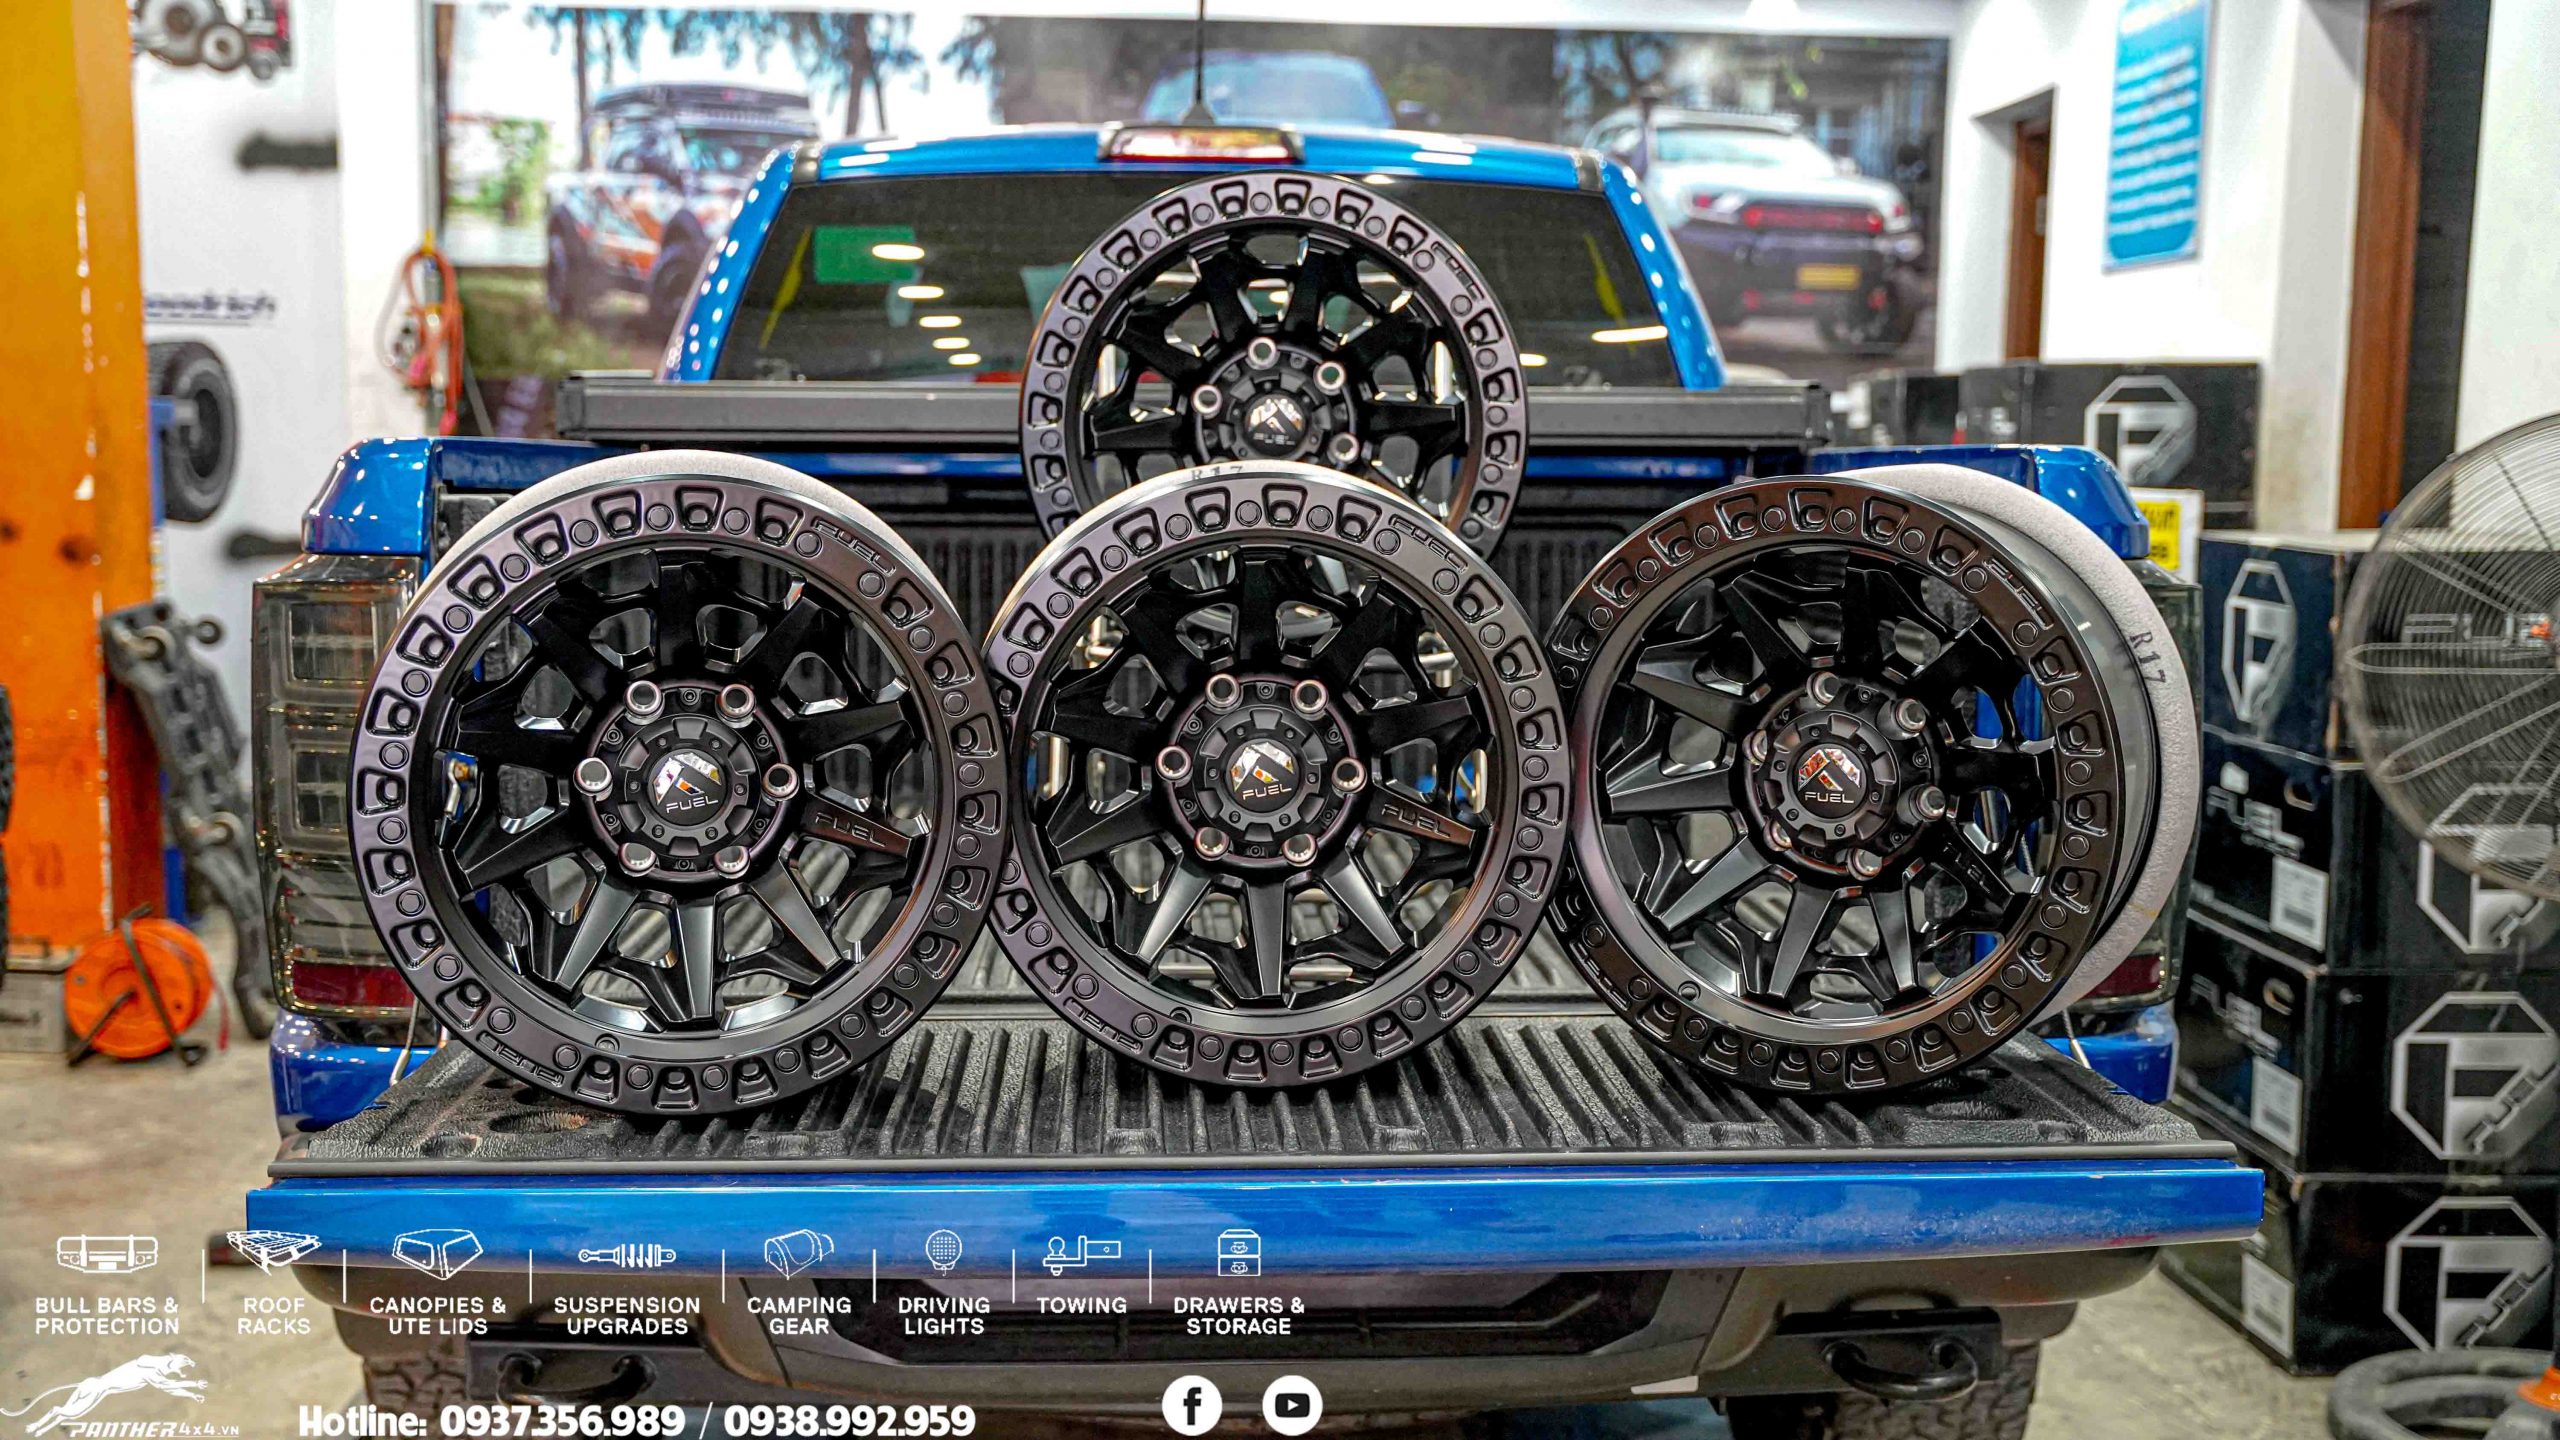 Độ xe bán tải Ford Ranger Raptor màu xanh sao cho ngầu tại HCM?